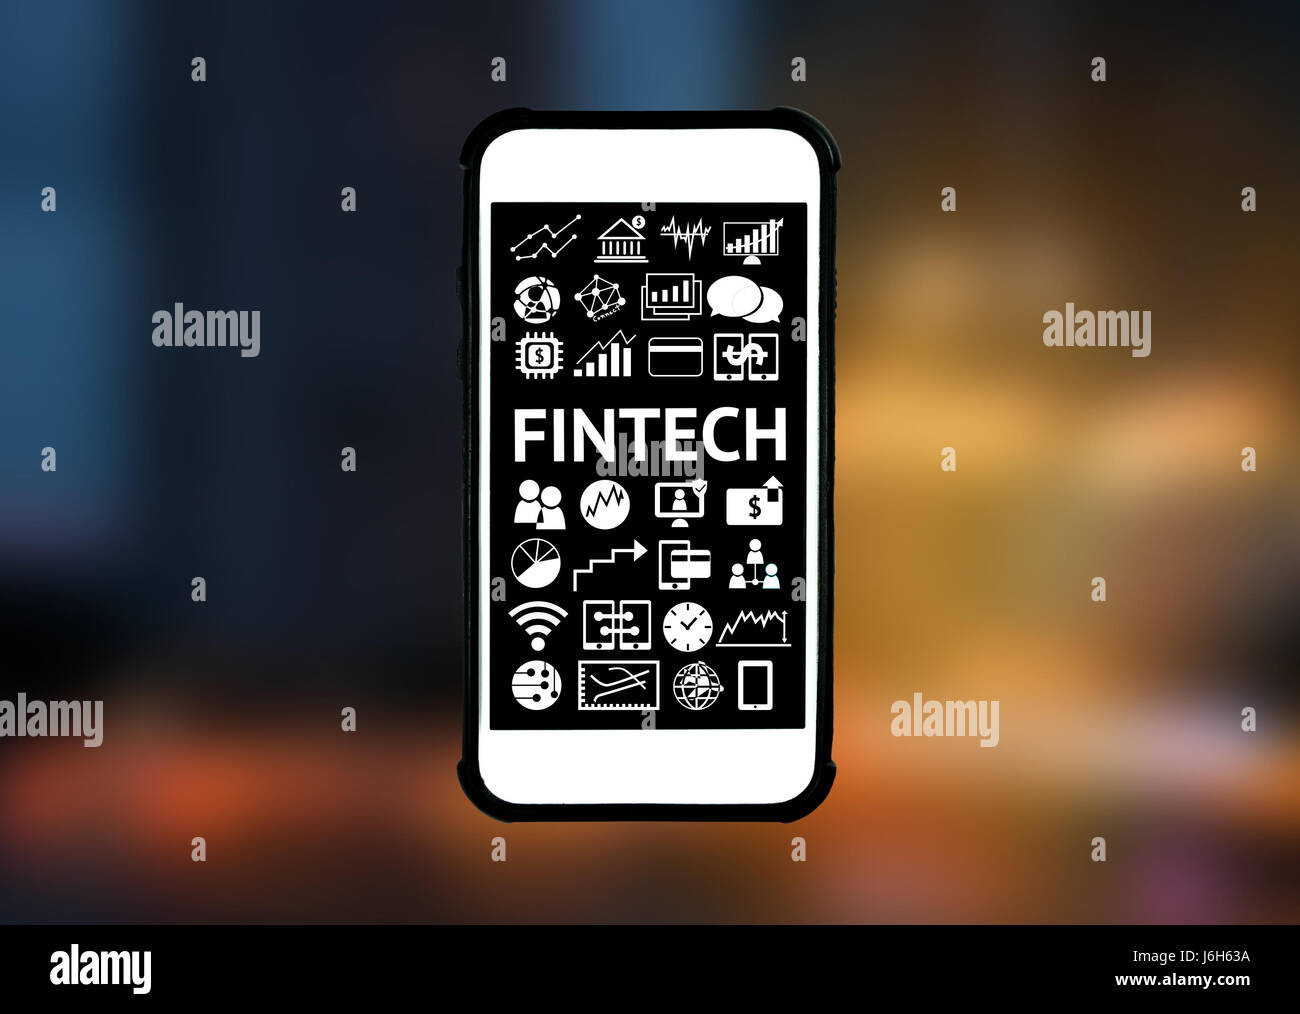 La technologie de l'Internet financier Investissement Fintech Concept. icône , smart phone avec abstract background Banque D'Images